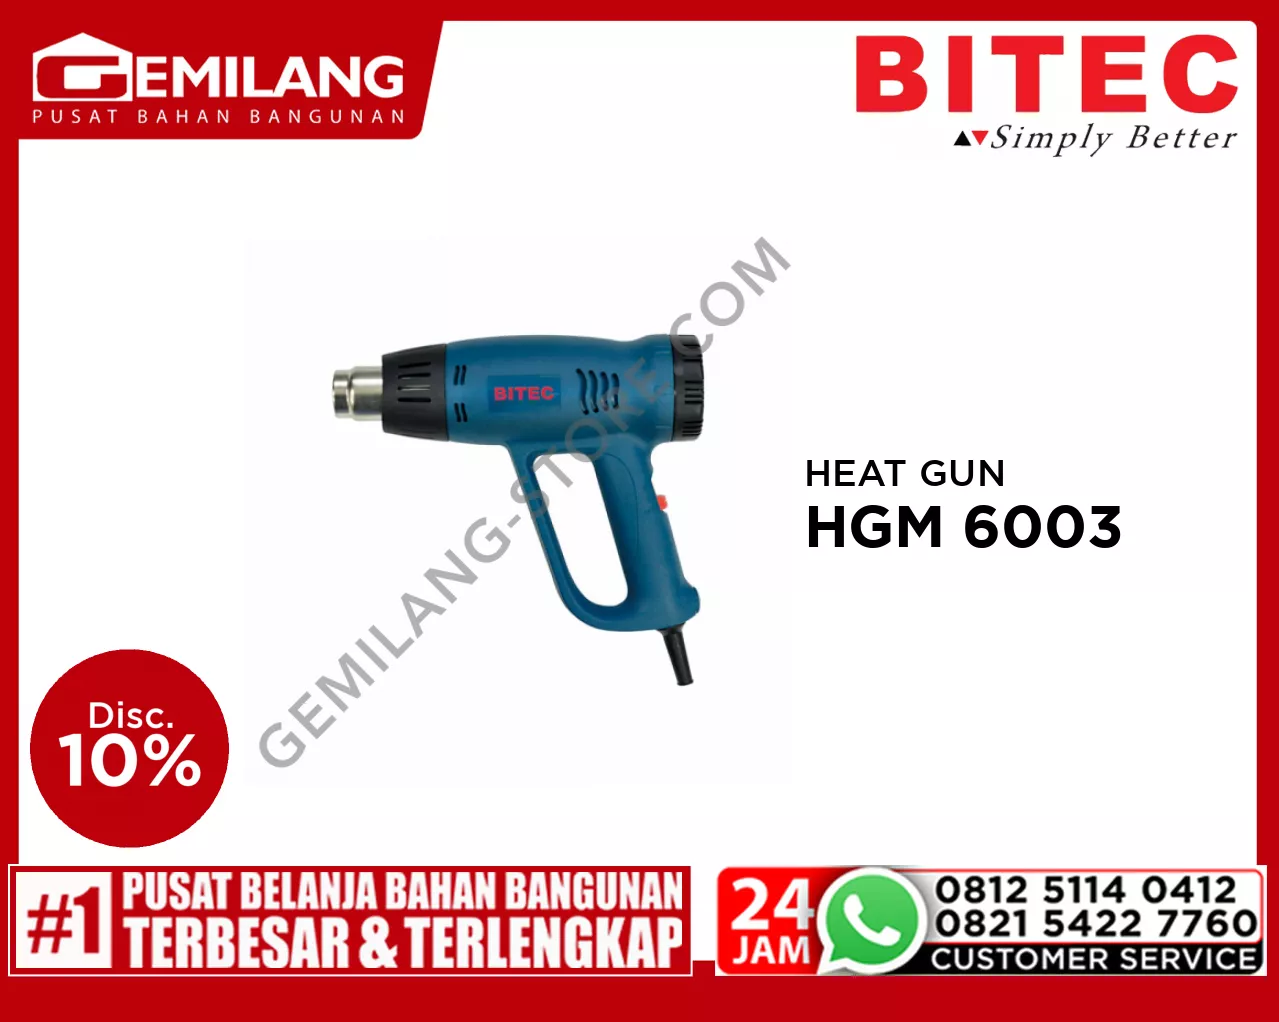 BITEC HEAT GUN HGM 6003